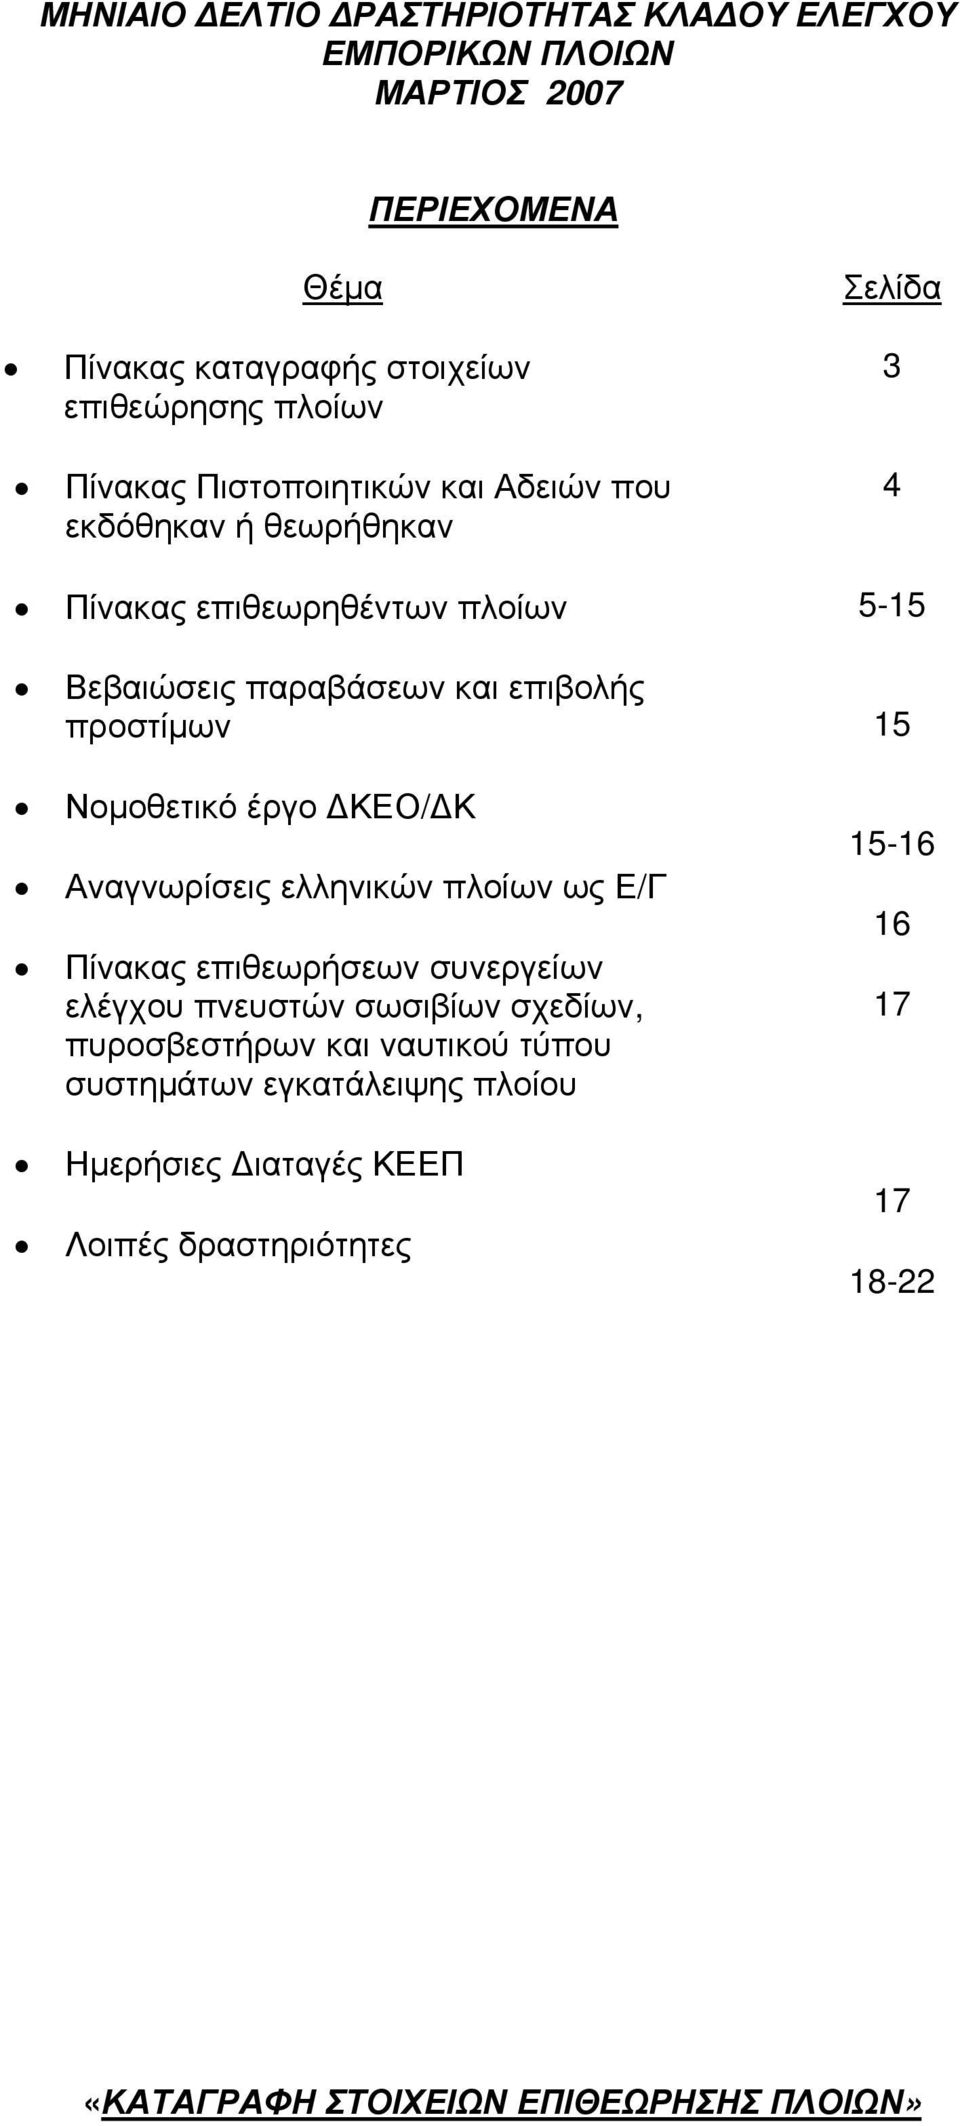 Νομοθετικό έργο ΔΚΕΟ/ΔΚ Αναγνωρίσεις ελληνικών πλοίων ως Ε/Γ Πίνακας επιθεωρήσεων συνεργείων ελέγχου πνευστών σωσιβίων σχεδίων, πυροσβεστήρων και